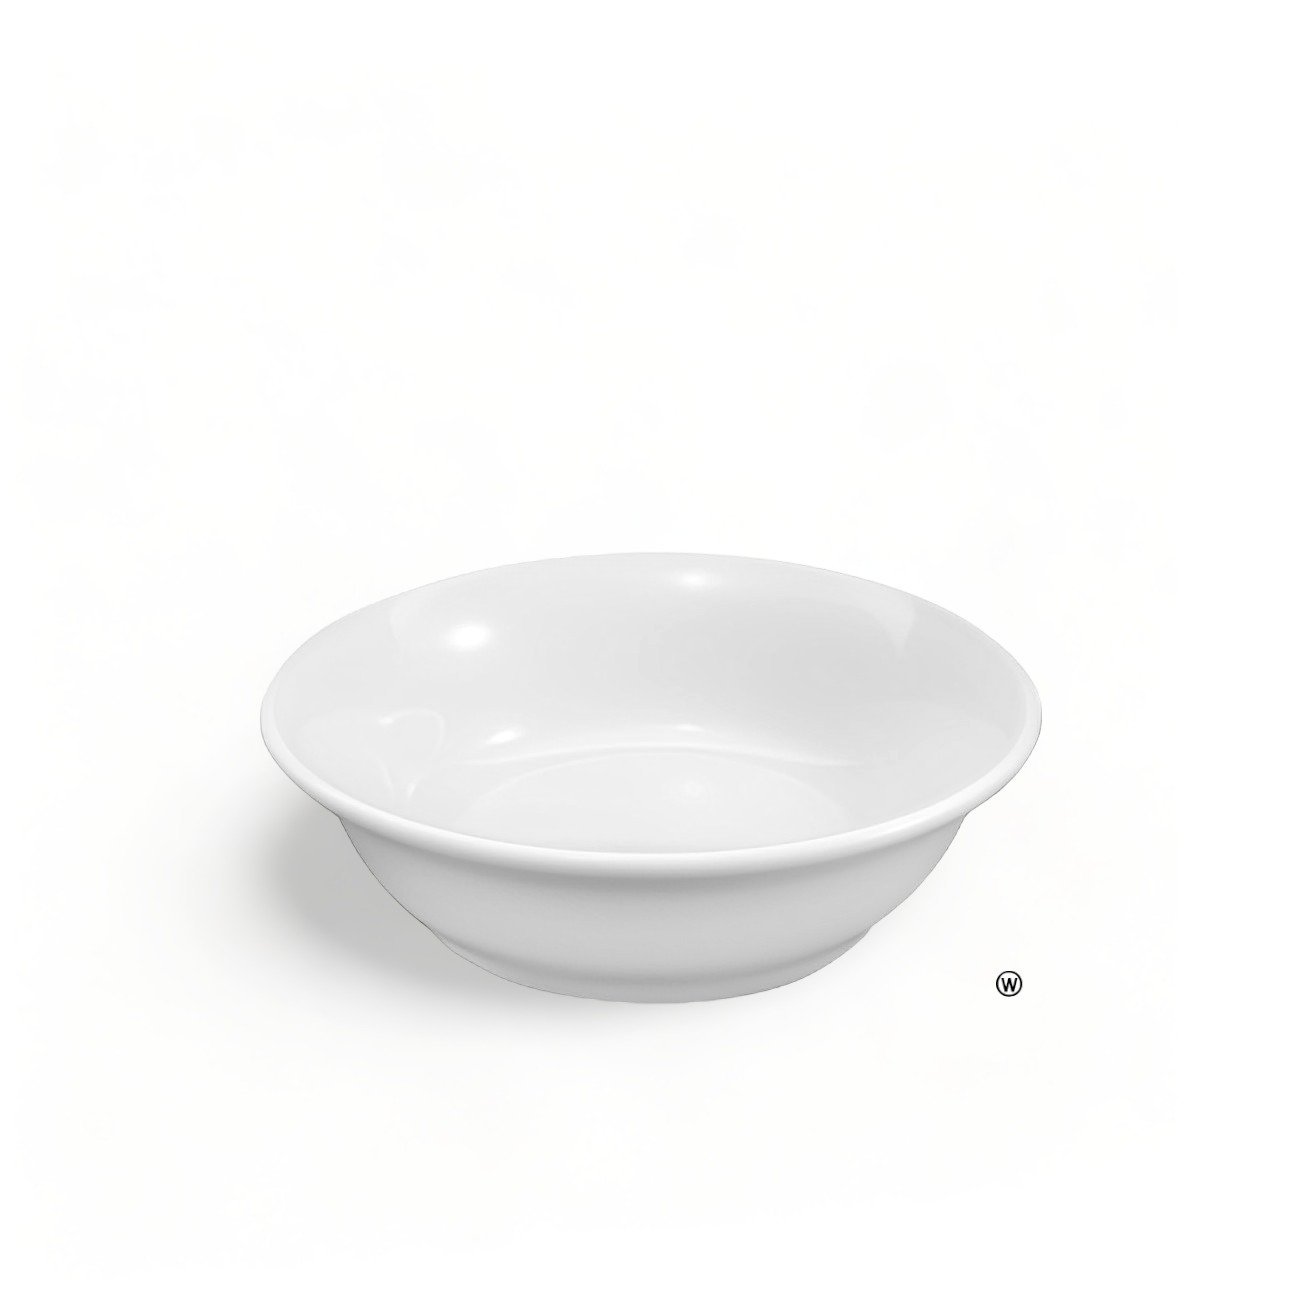 3 Tigela de Porcelana Premium Cumbuca Pote Bowl 350ml